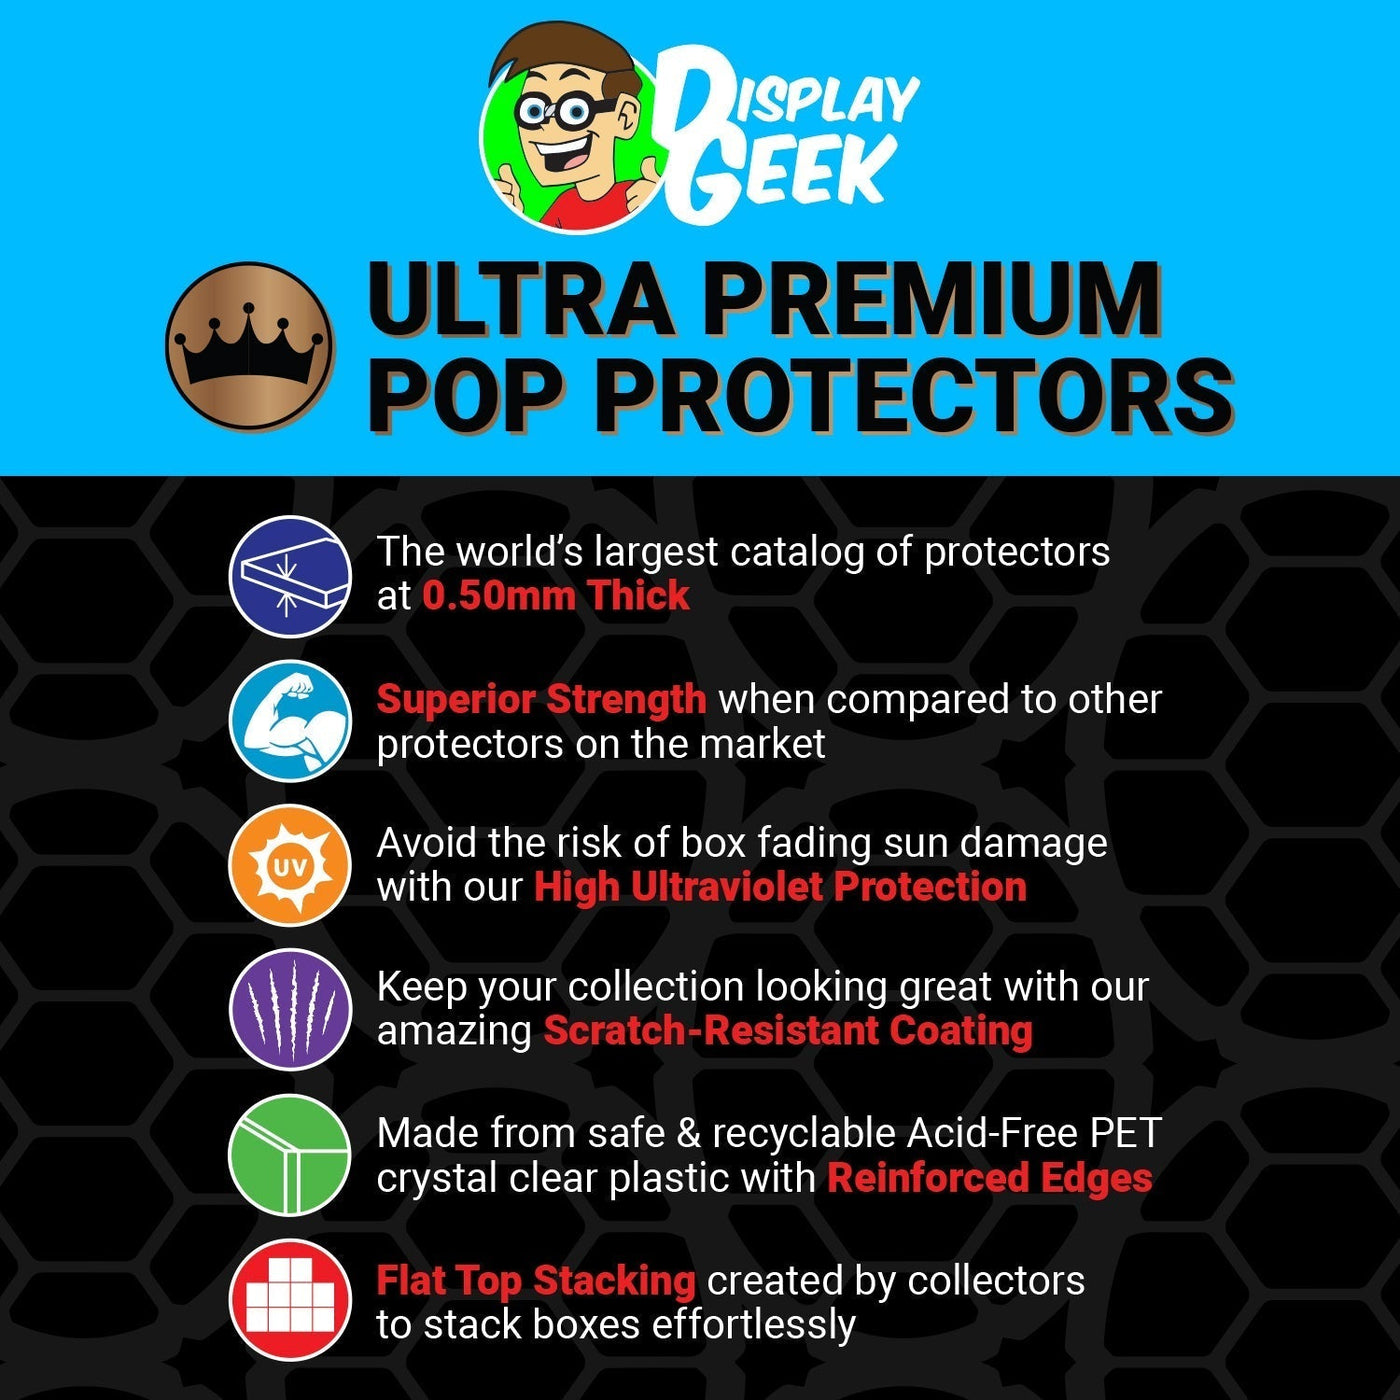 Pop Protector for 2 Pack Freddy Krueger & Jason Voorhees Bloody Funko Pop on The Protector Guide App by Display Geek